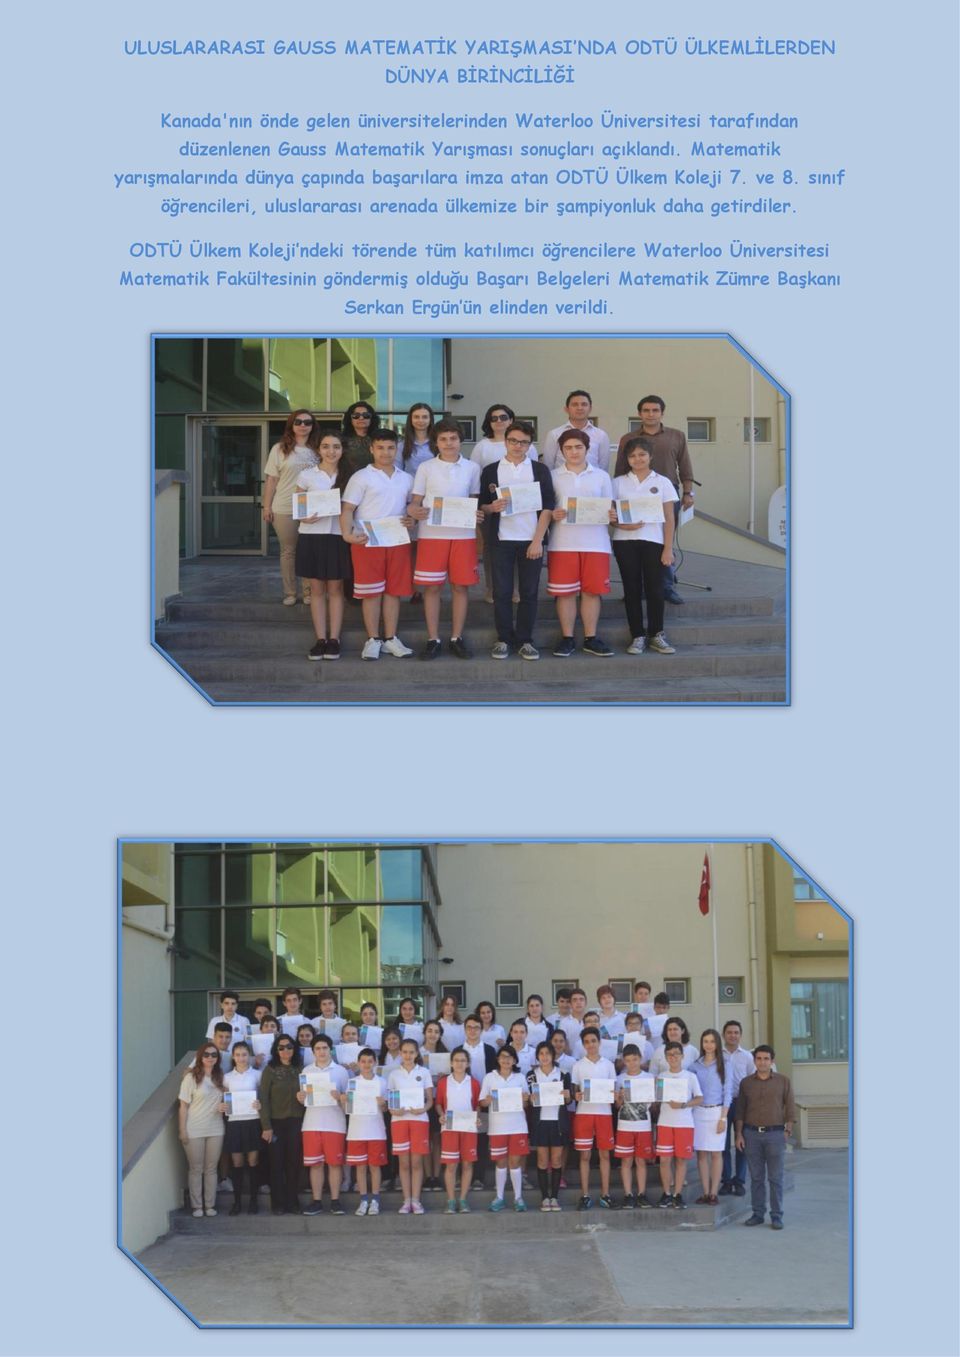 Matematik yarışmalarında dünya çapında başarılara imza atan ODTÜ Ülkem Koleji 7. ve 8.